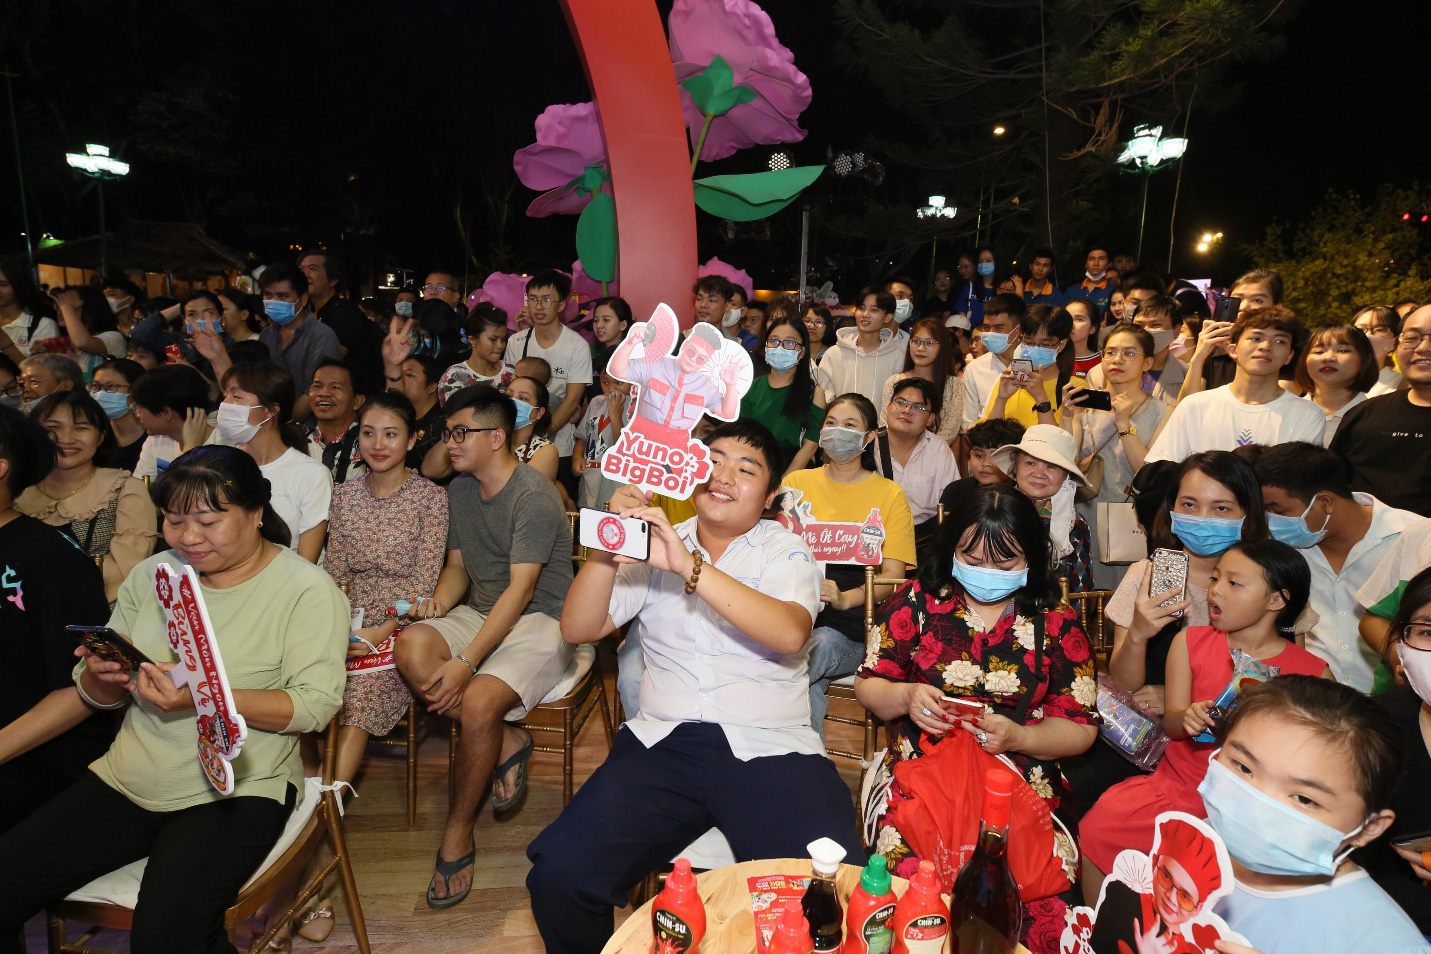 Min - JustaTee - Yuno BigBoi khuấy đảo Lễ hội Tết Việt 2021, cùng fan thưởng thức đại tiệc ẩm thực 3 miền bùng vị Tết! - Ảnh 7.